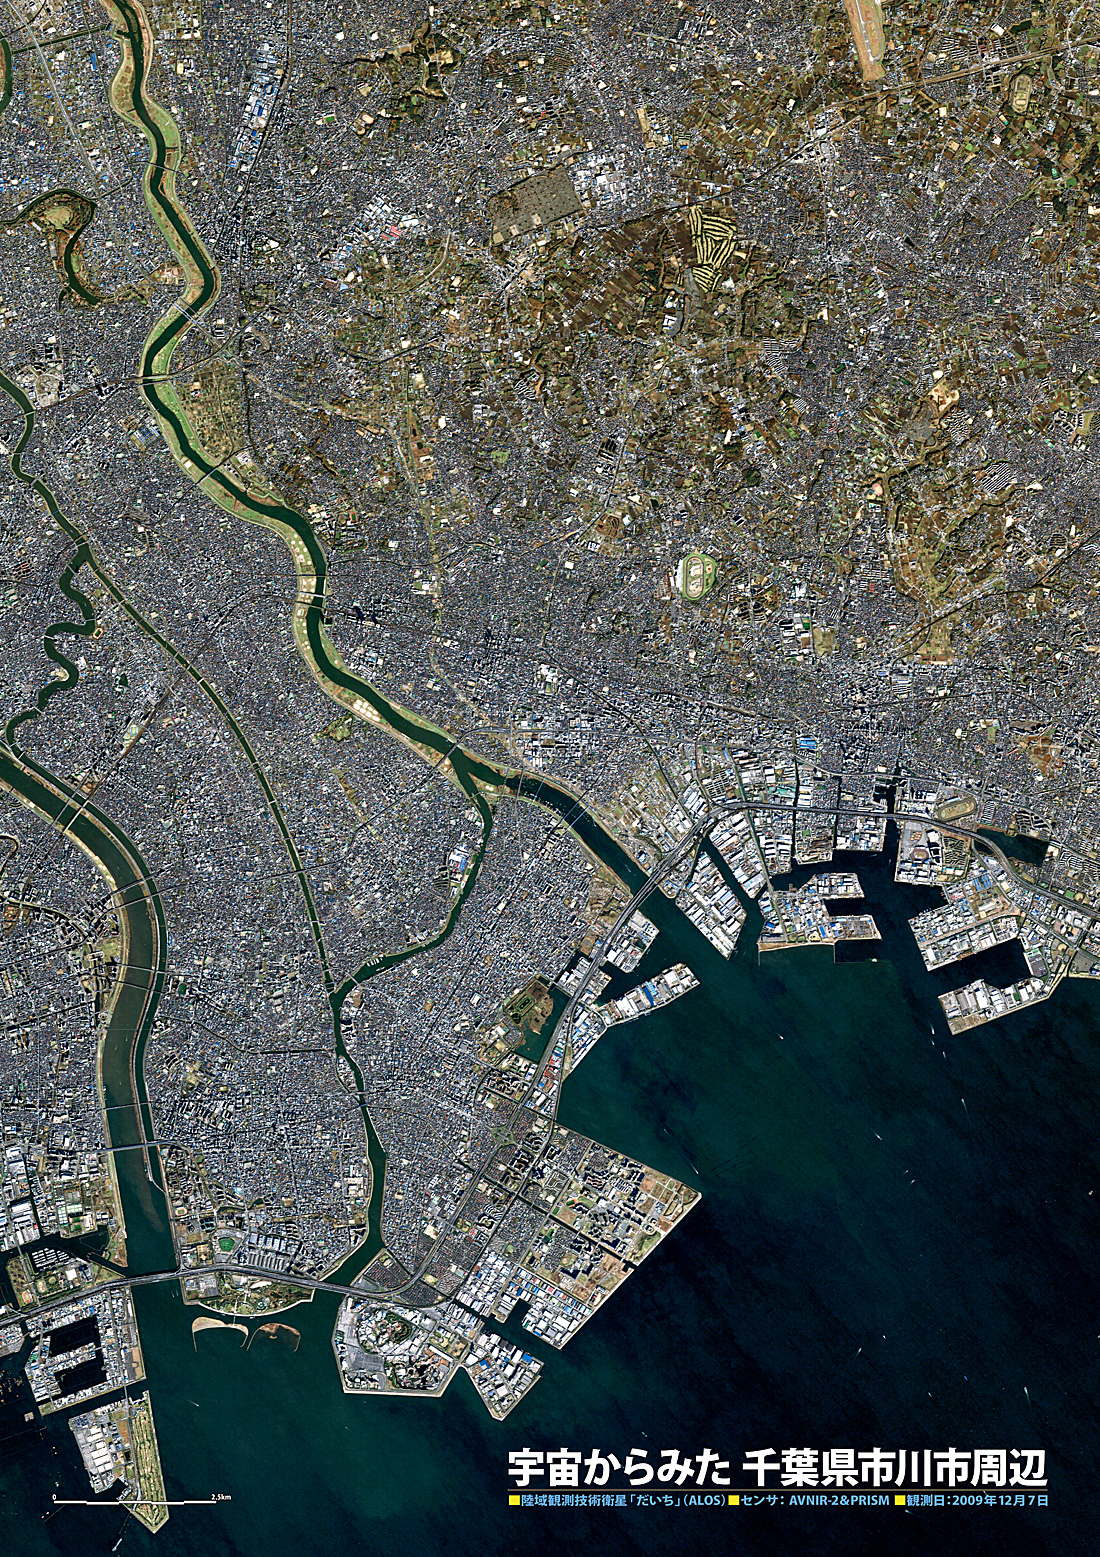 だいちから見た日本の都市 市川市周辺:衛星画像（ポスター仕上げ）